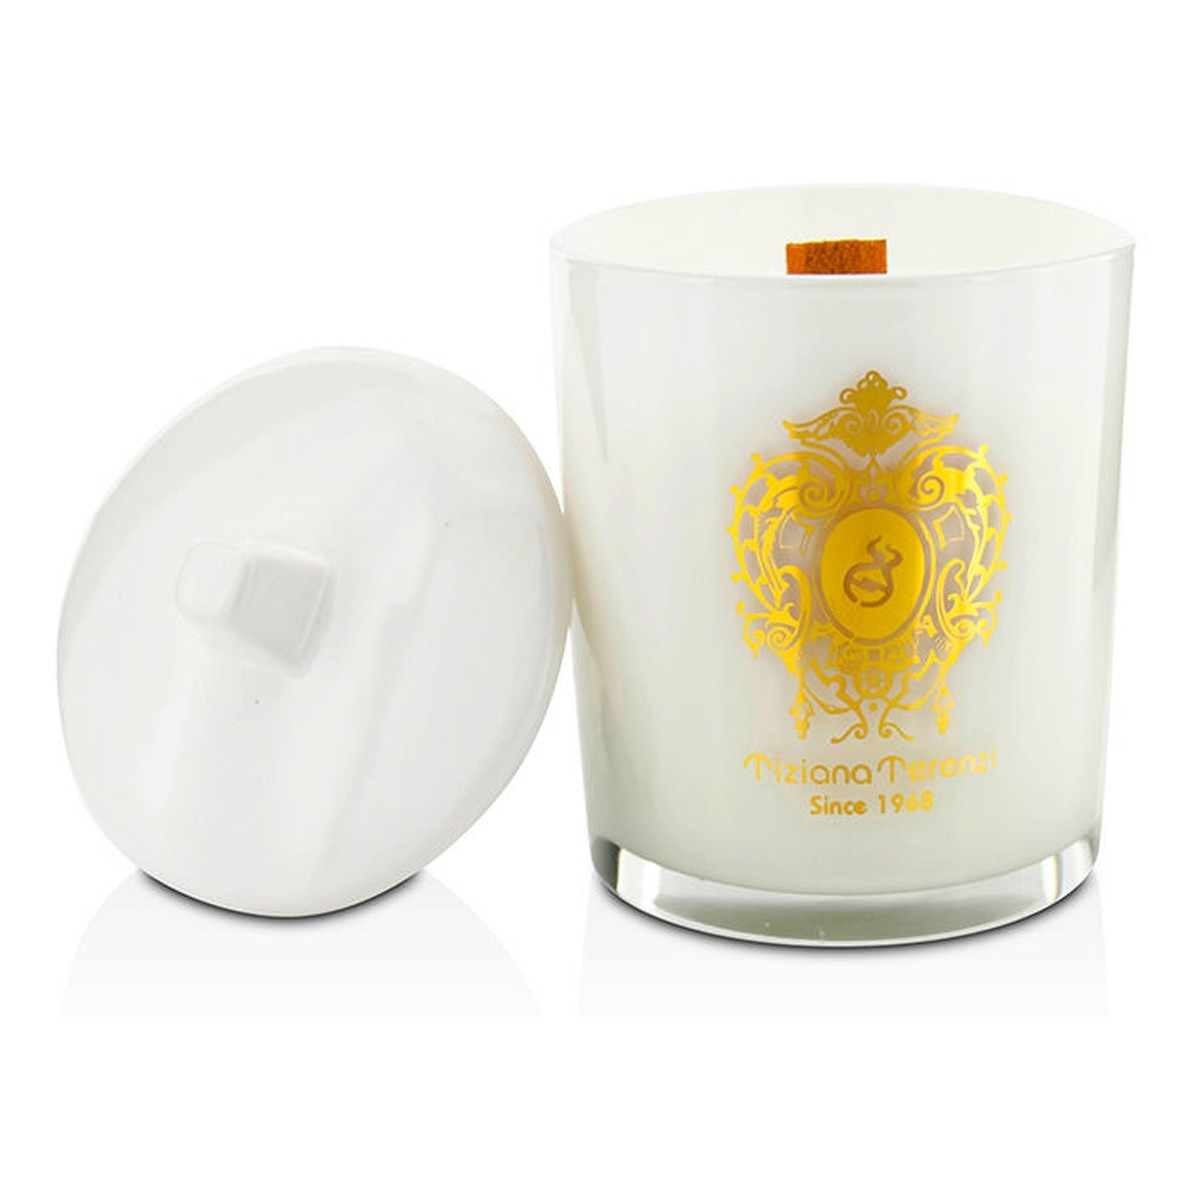 Tiziana Terenzi White Fire White Glass świeczka zapachowa 170g